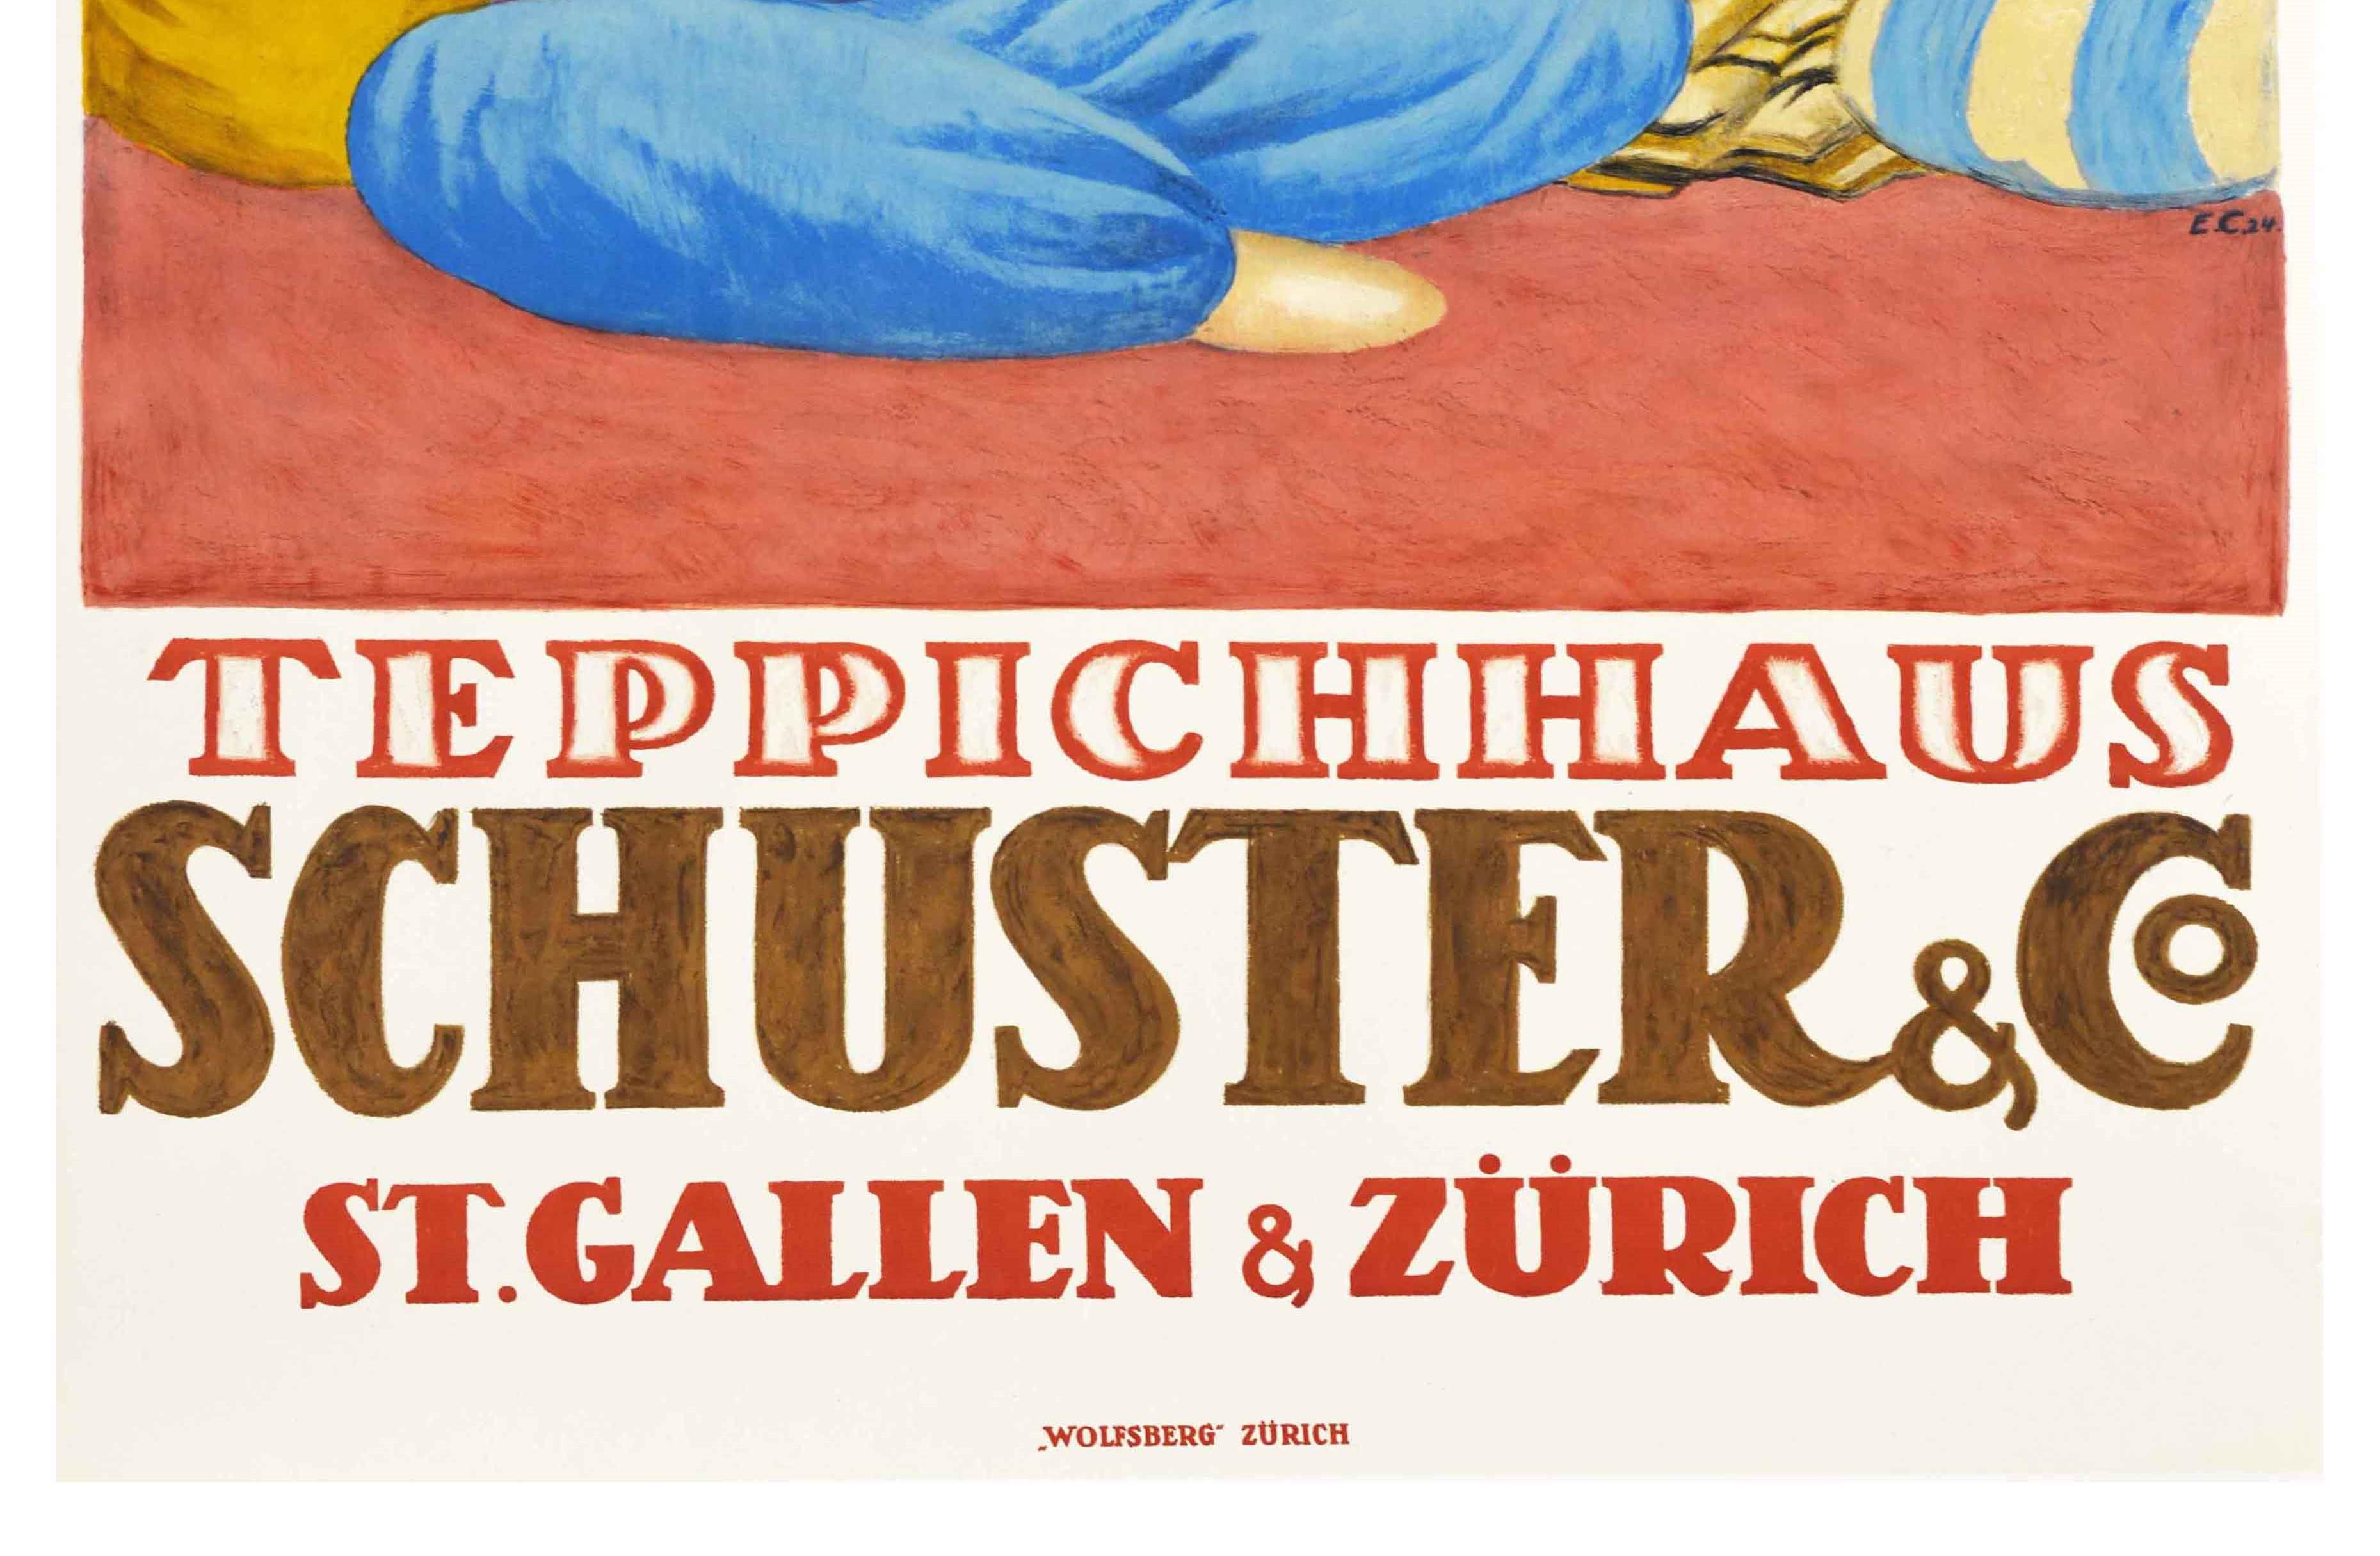 Swiss Original Vintage Poster Teppichhaus Schuster St Gallen & Zurich Orient Carpets For Sale